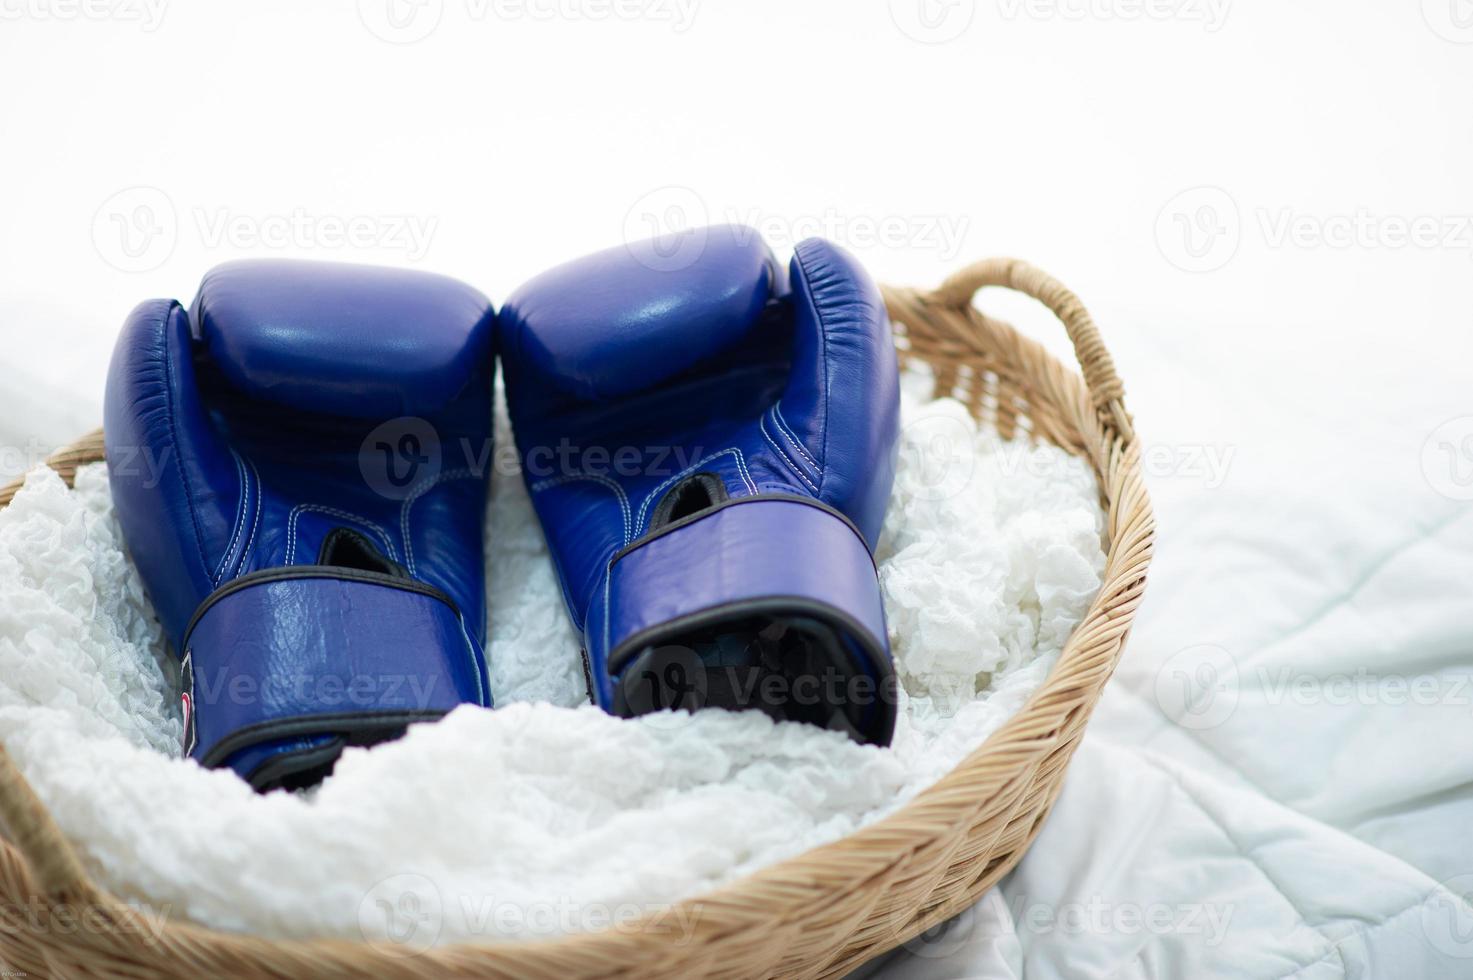 de bokshandschoenen van de boksers worden in het wit geplaatst met hoop en vastberadenheid voor het boksen. foto